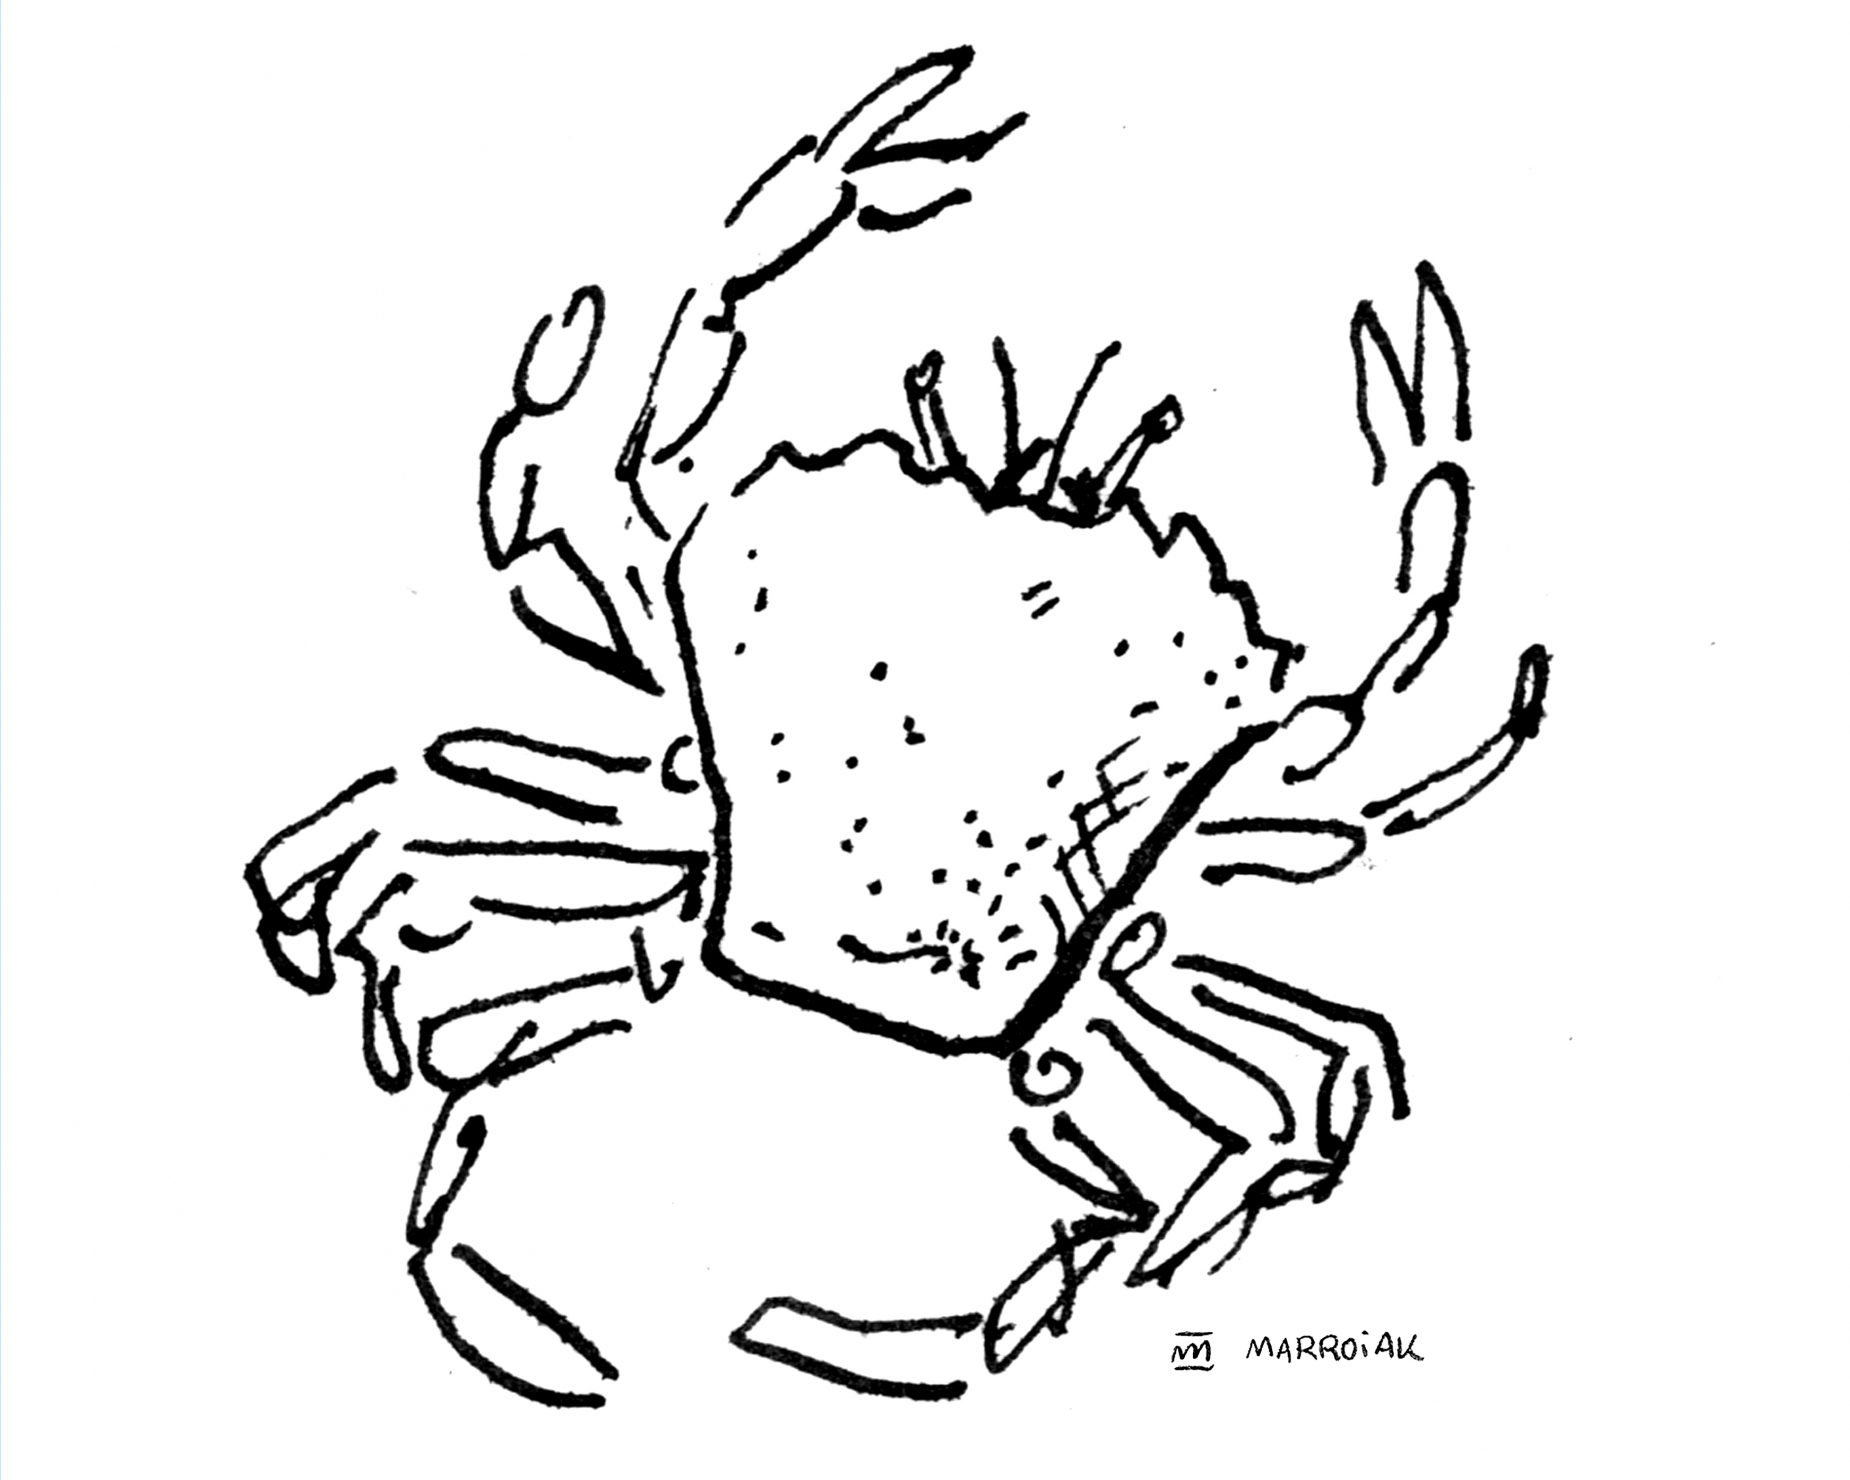 Dibujo cangrejo de arena (Portumnus latipes - Carranc). Ilustración en blanco y negro